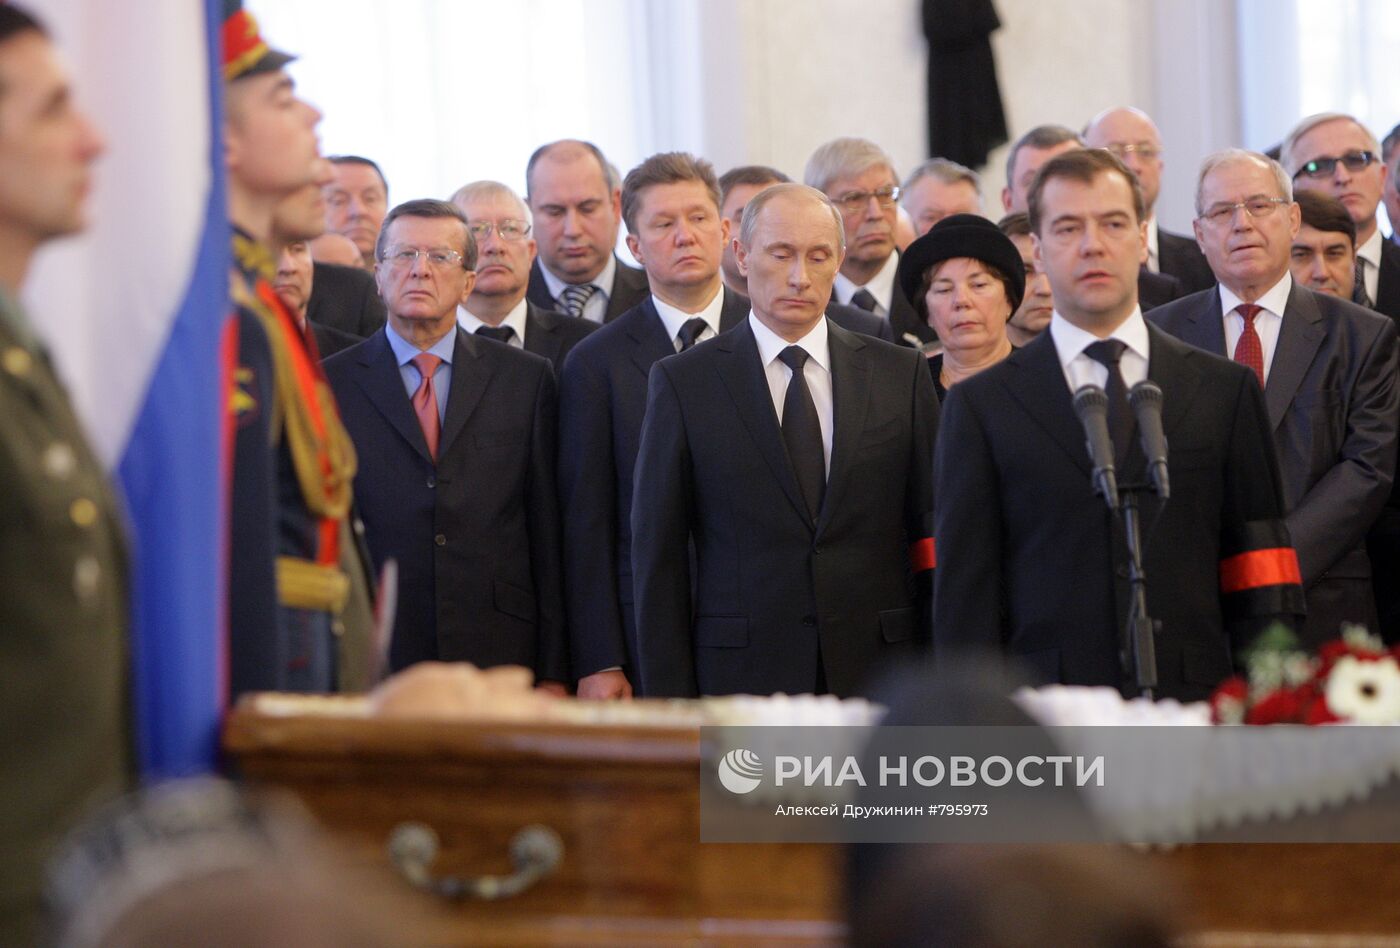 Д.Медведев и В.Путин на панихиде по В.Черномырдину